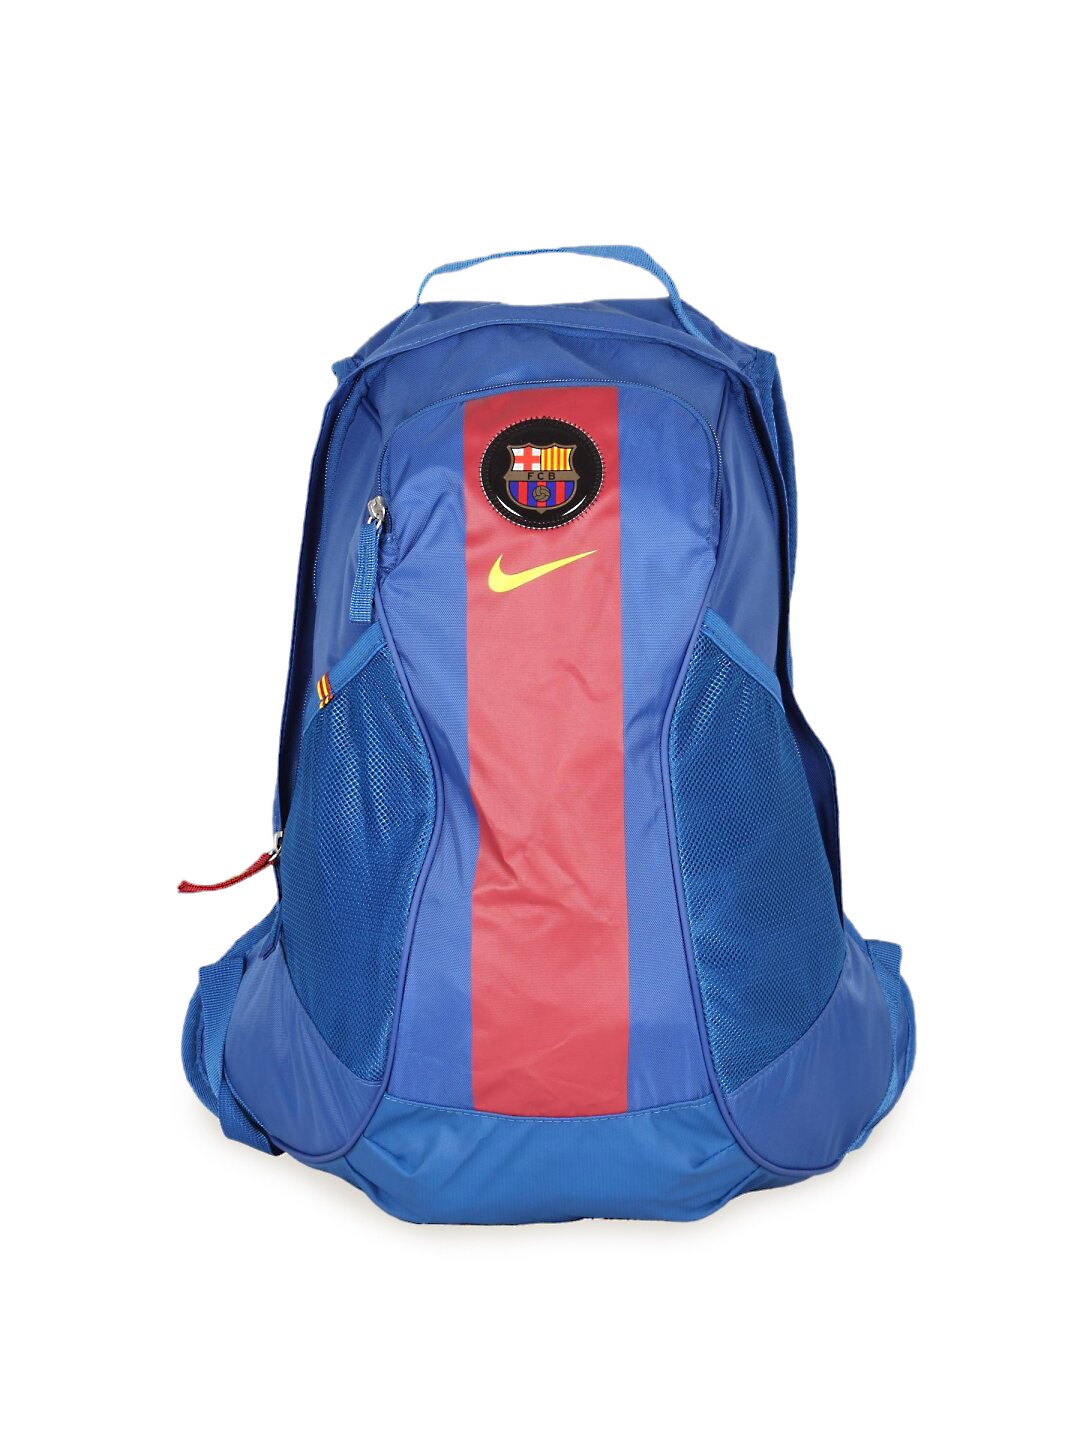 Nike Unisex Allegian Blue Backpack